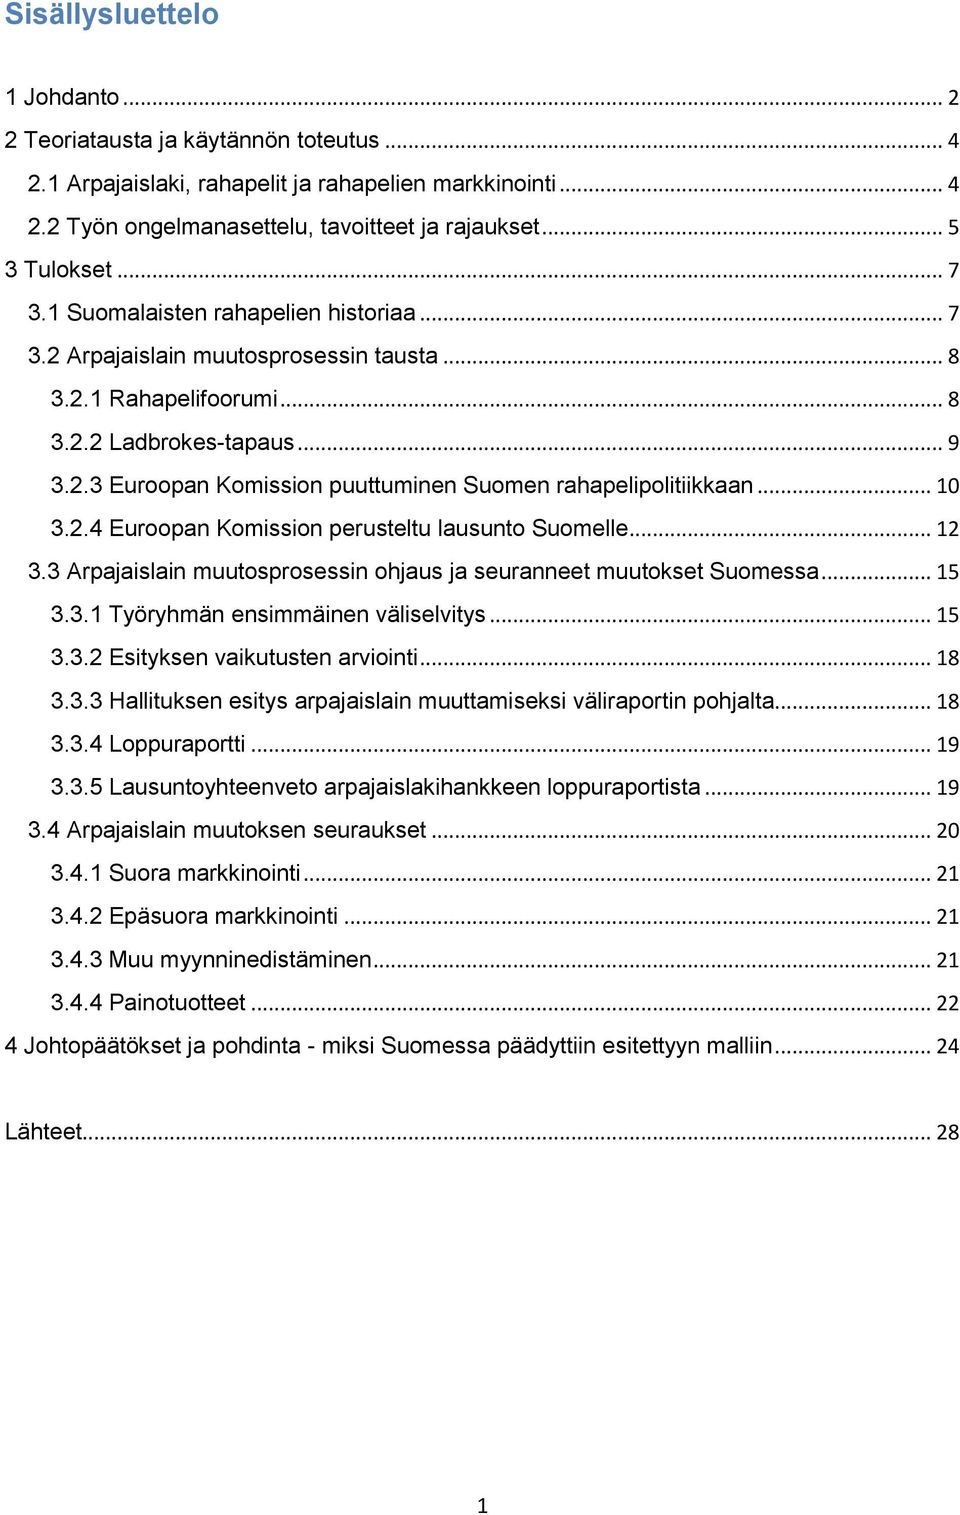 .. 10 3.2.4 Euroopan Komission perusteltu lausunto Suomelle... 12 3.3 Arpajaislain muutosprosessin ohjaus ja seuranneet muutokset Suomessa... 15 3.3.1 Työryhmän ensimmäinen väliselvitys... 15 3.3.2 Esityksen vaikutusten arviointi.